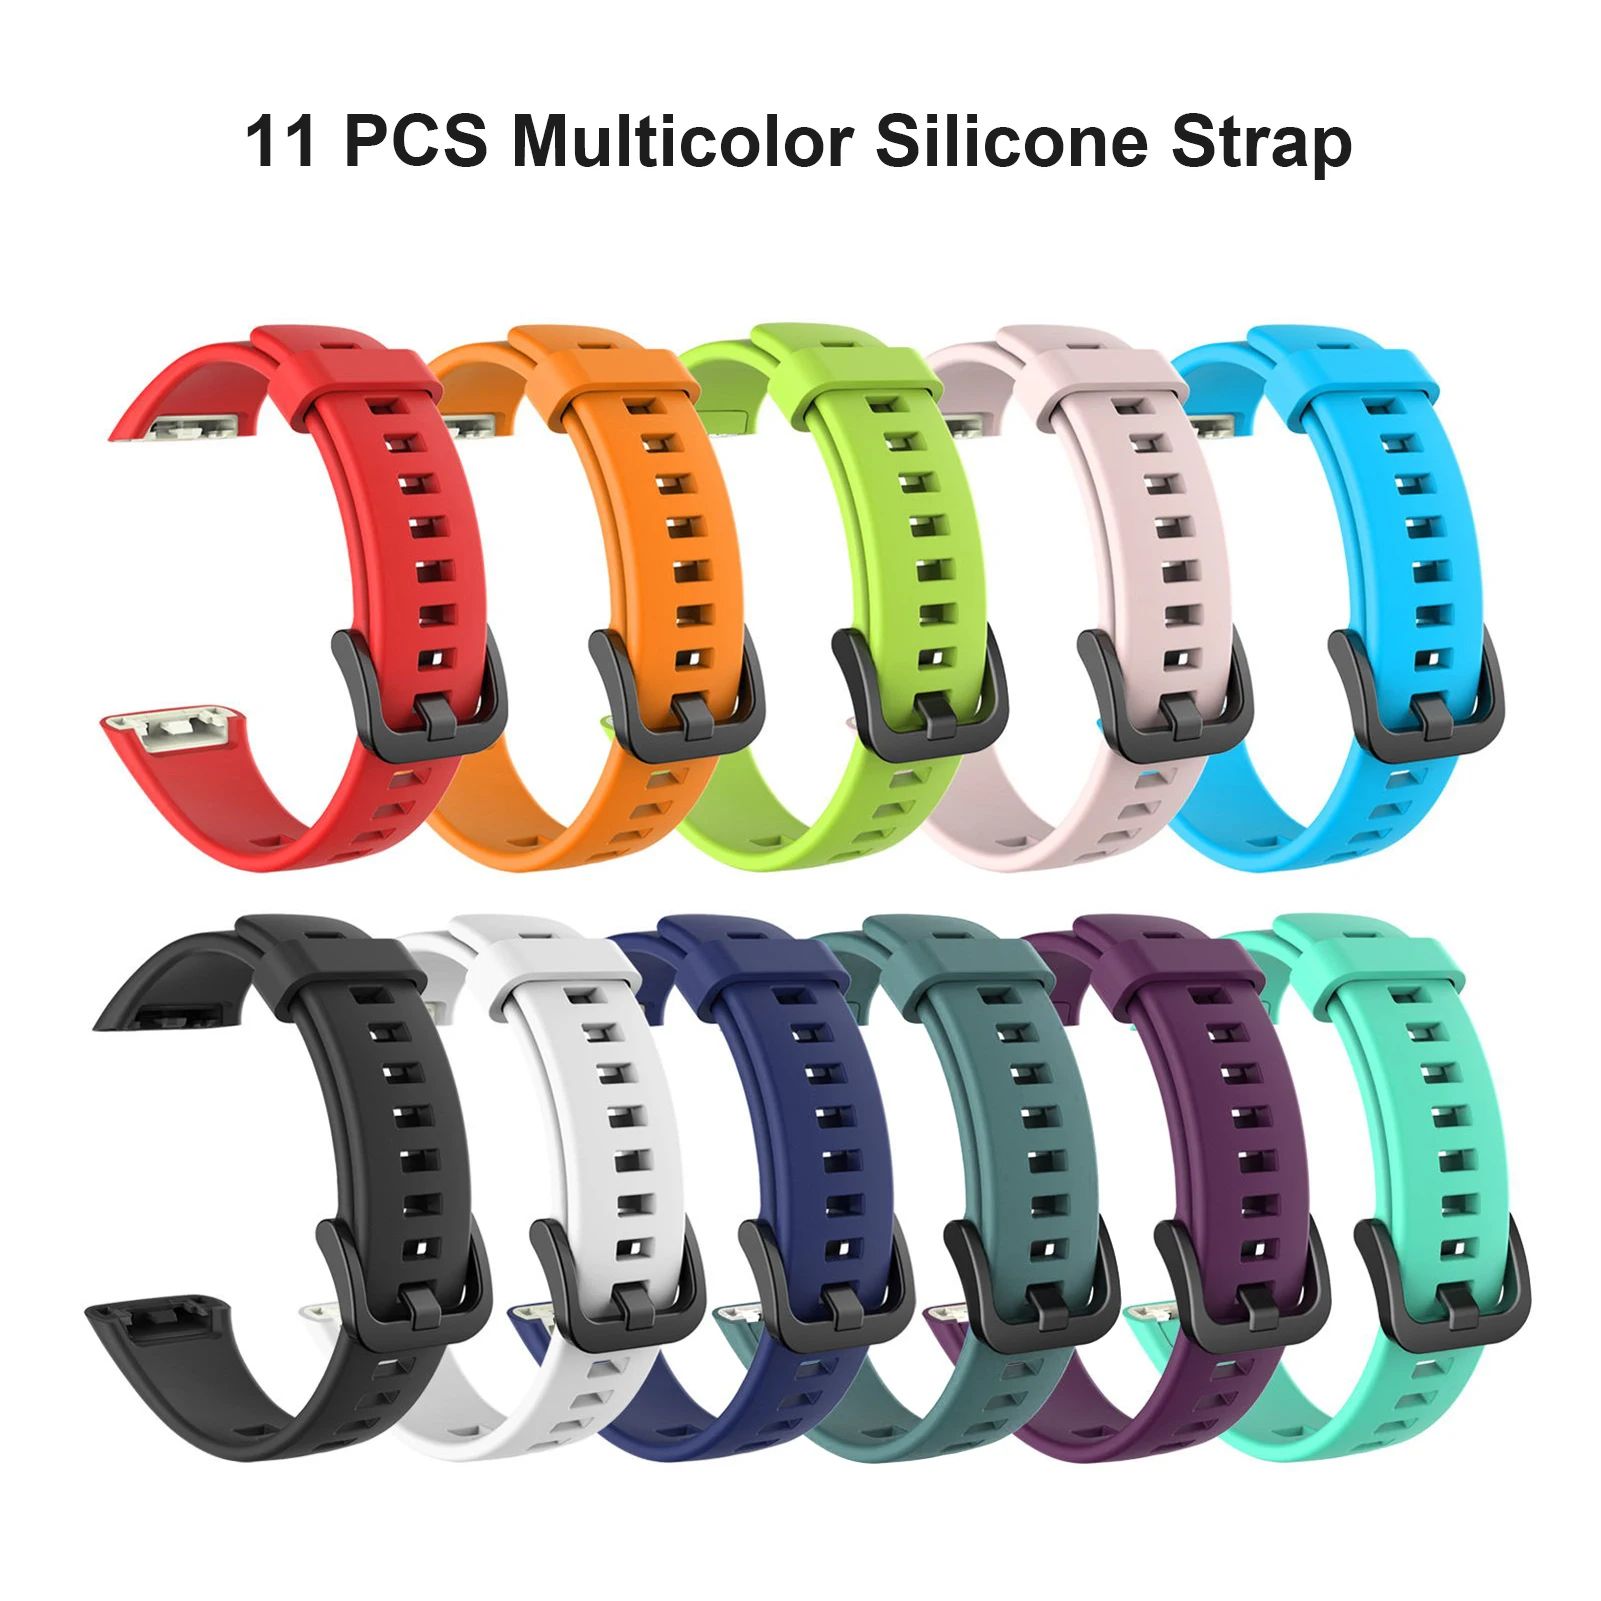 Cores: 11pcs pulseira de silicone